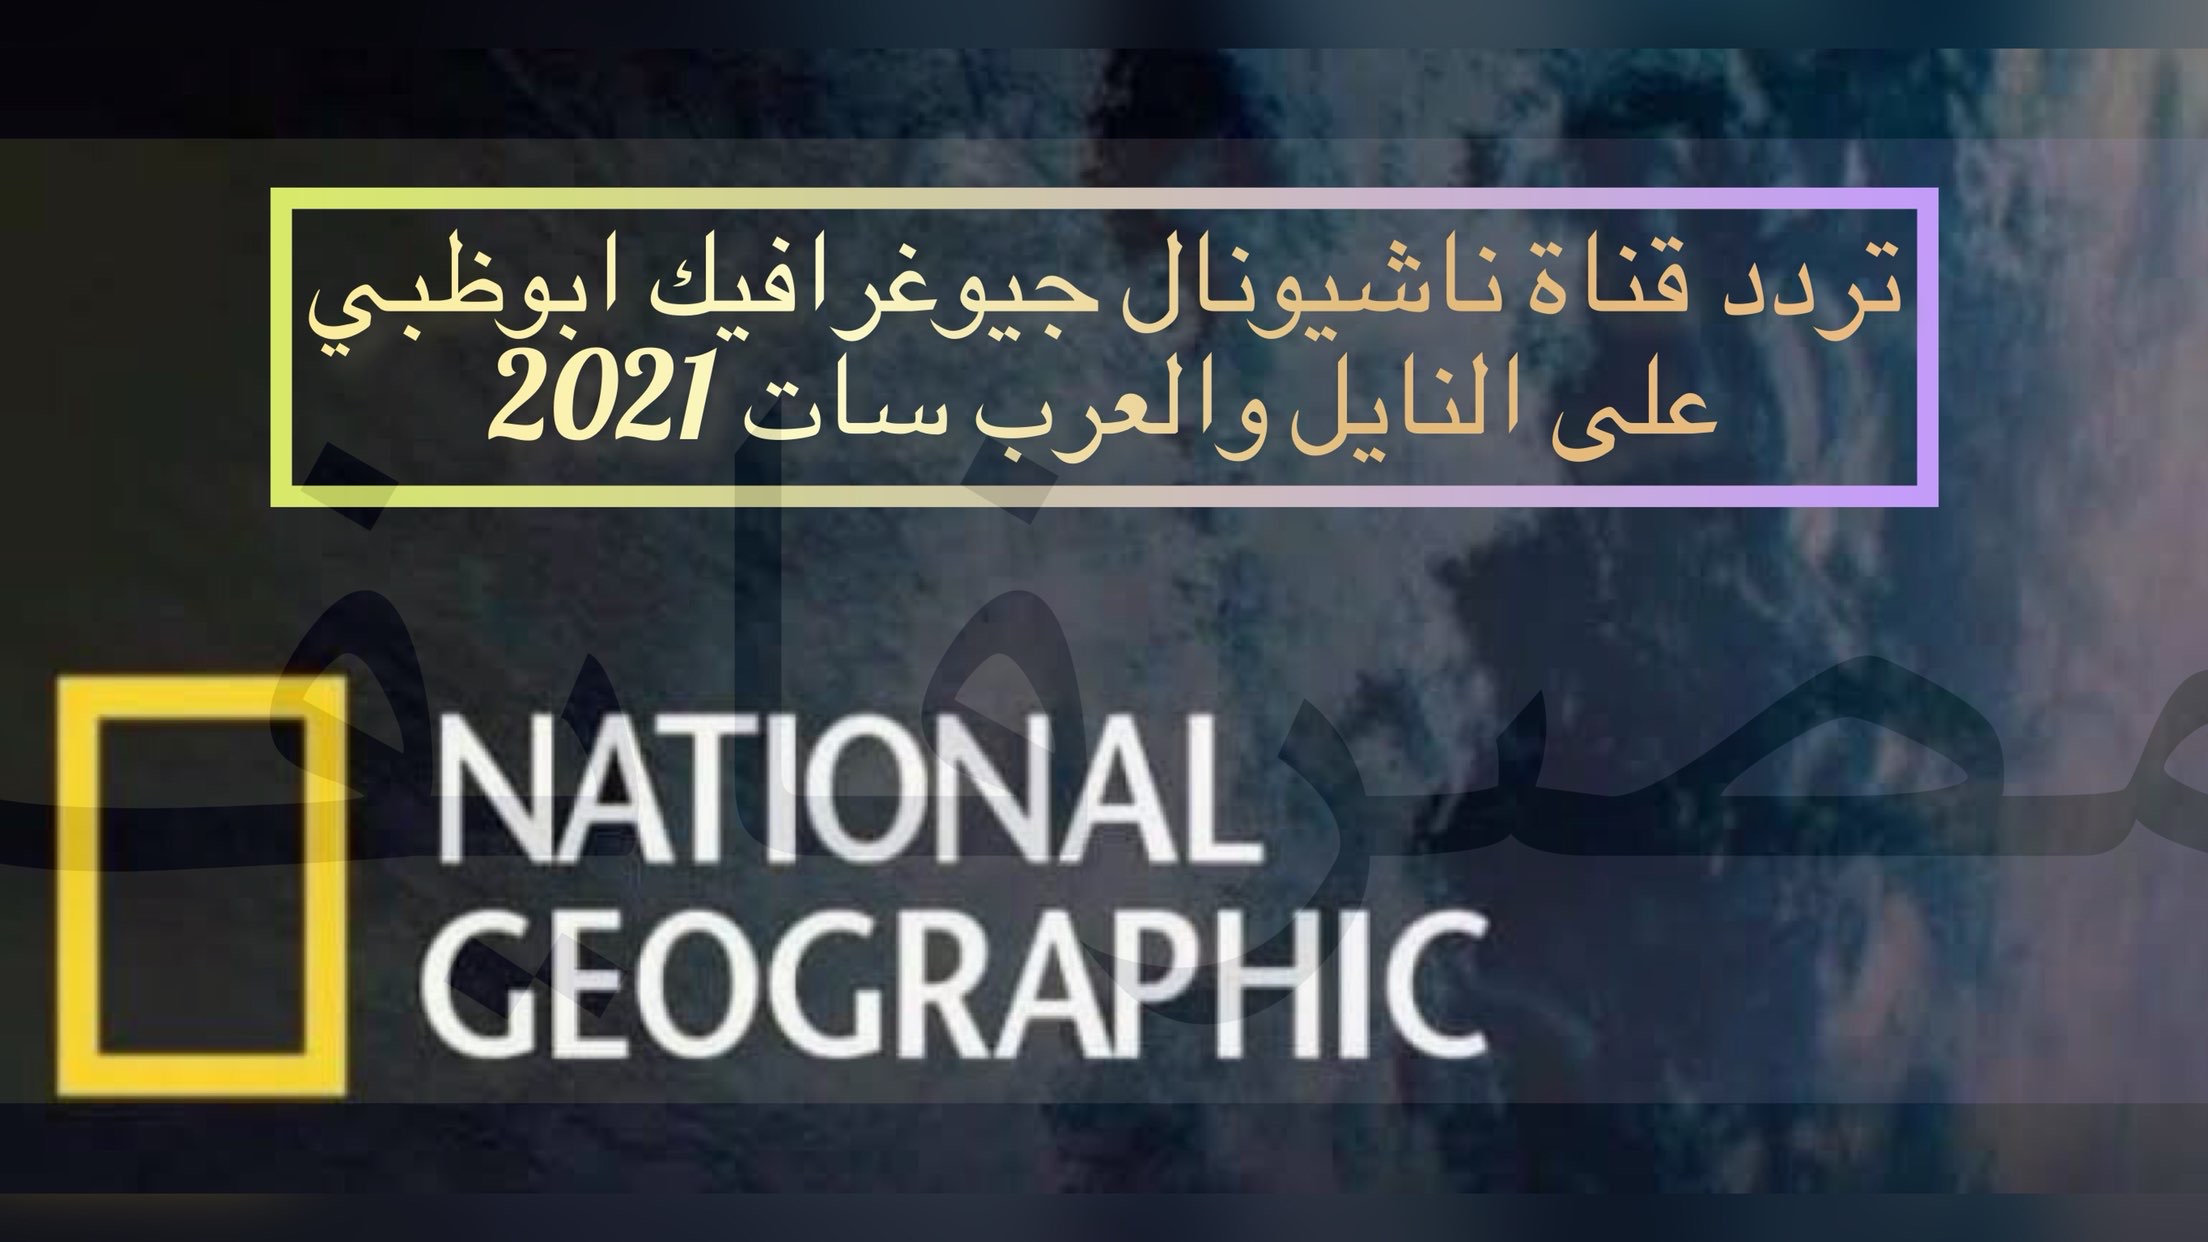 تردد قناة ناشيونال جيوغرافيك الجديد تحديث شهر أغسطس 2021